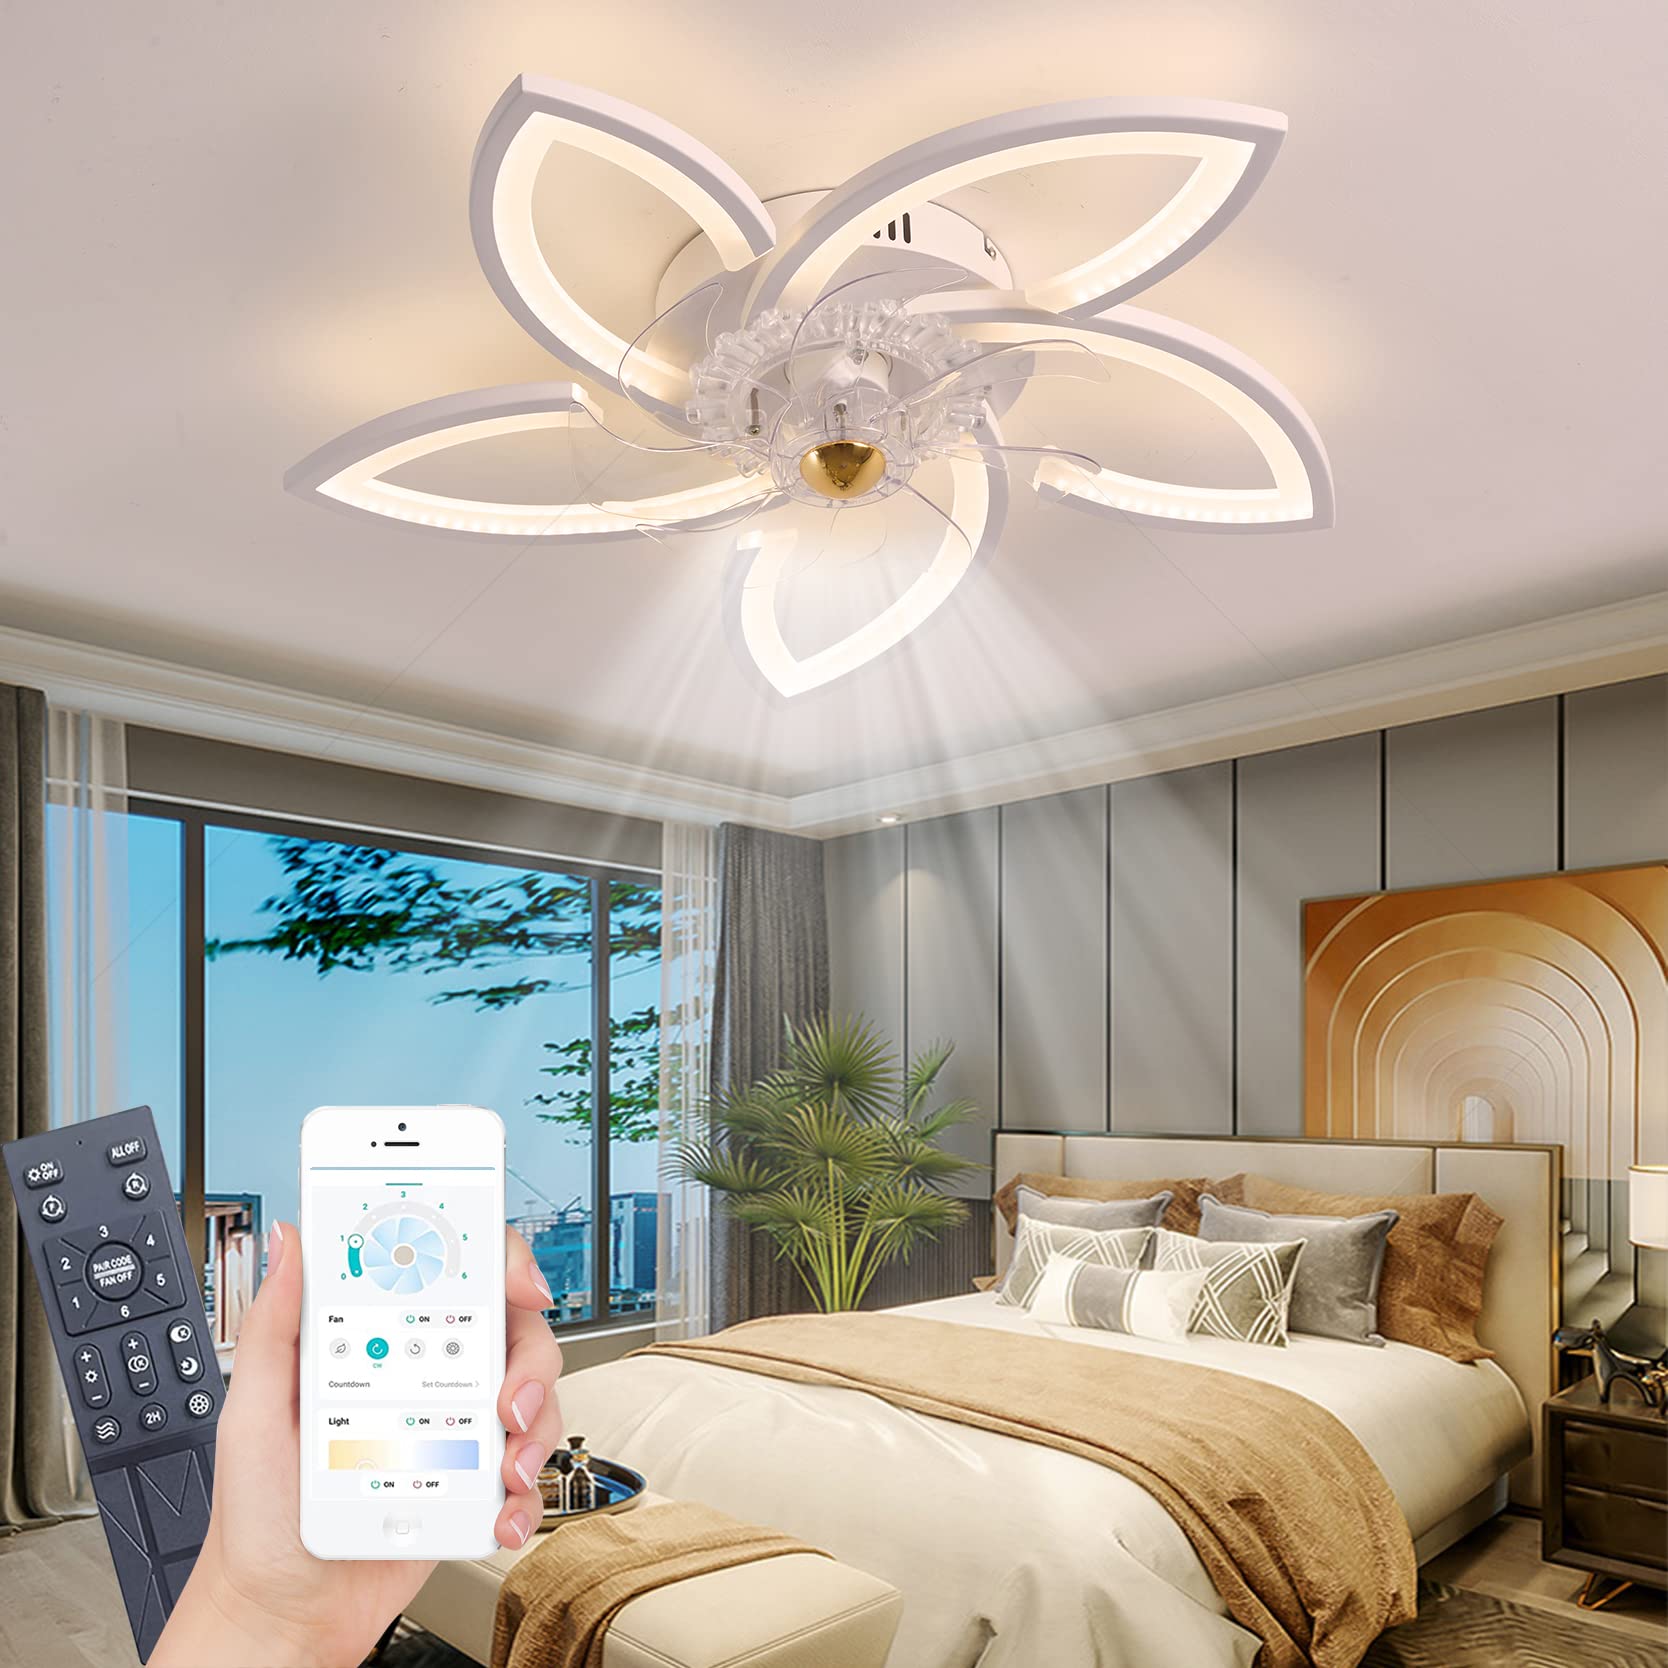 LED Deckenventilator mit Beleuchtung, 96W Dimmbare Deckenleuchte mit Ventilator Fernbedienung APP 3 Farbtemperatur 6-Speed Leise Deckenventilator für Schlafzimmer Wohnzimmer Esszimmer (Weiß, 70cm)